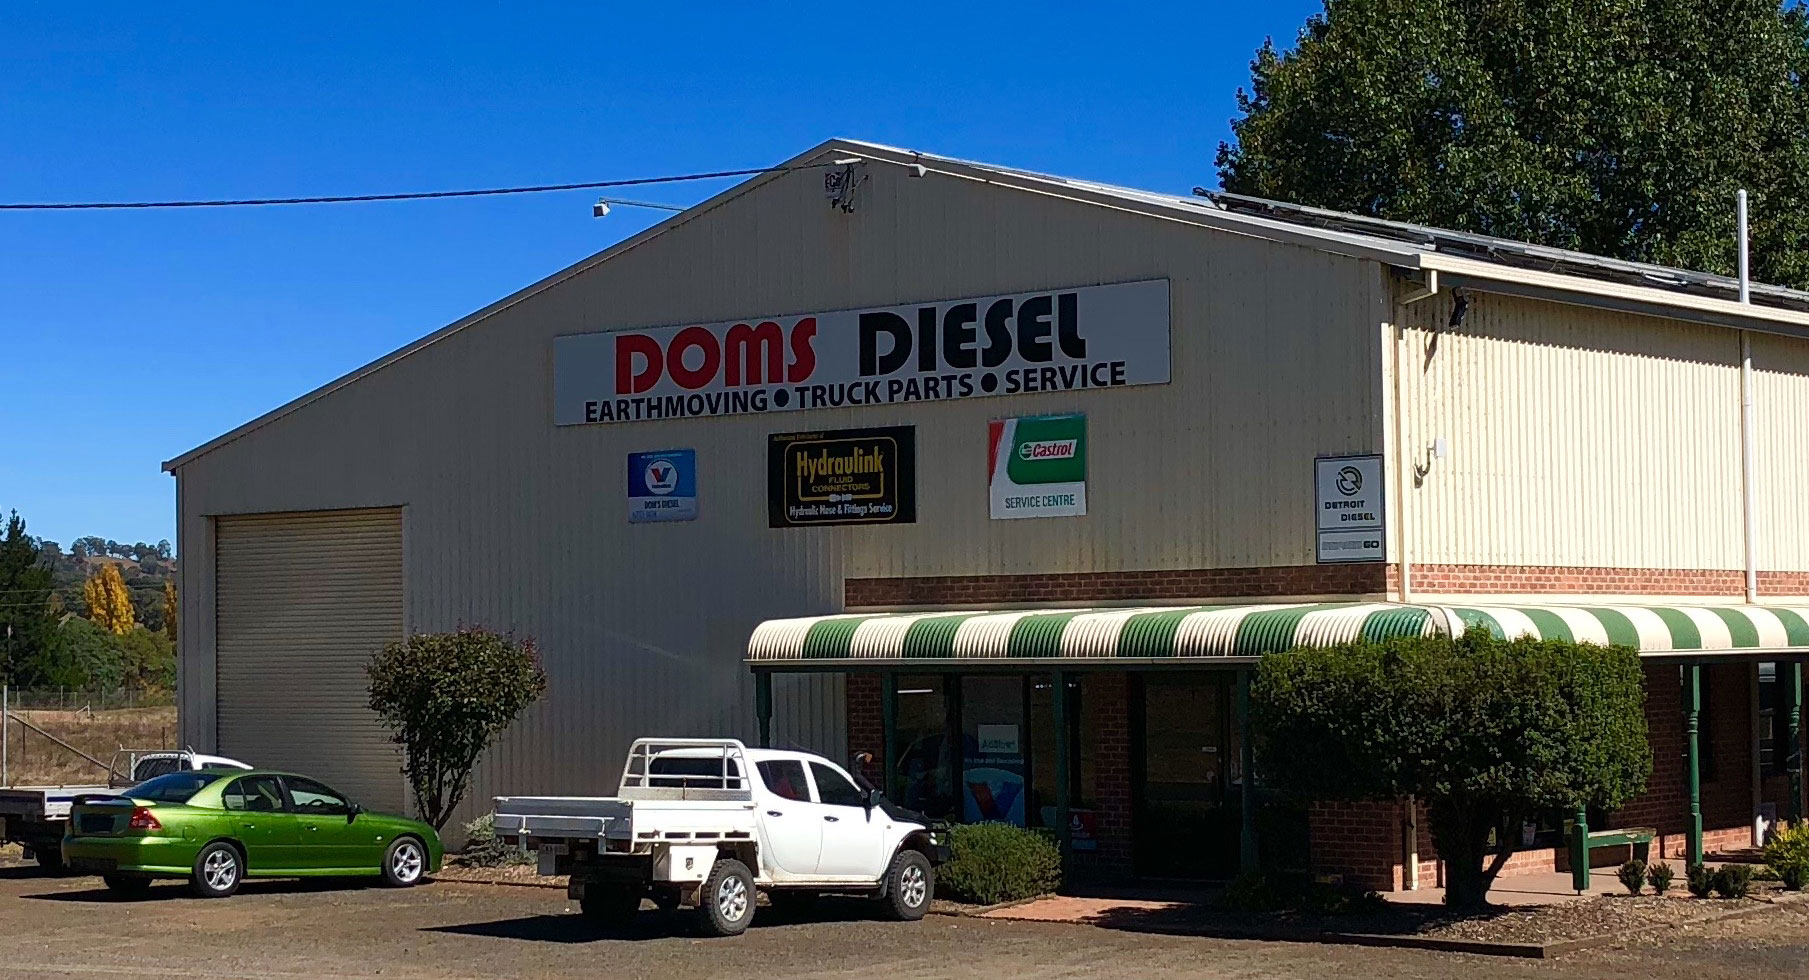 Doms Diesel